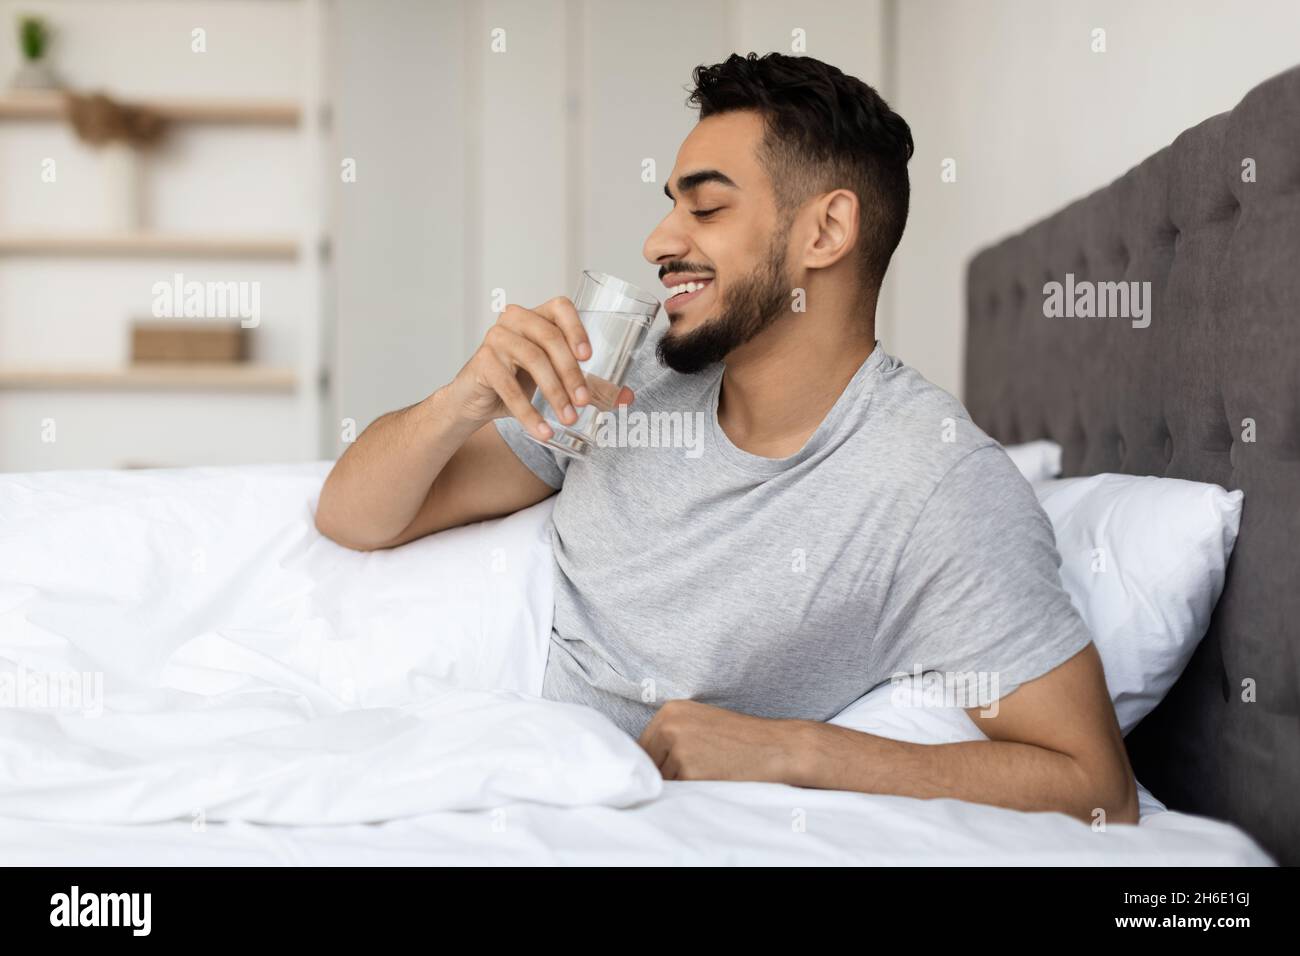 Lächelnder Arabischer Mann Trinkt Mineralwasser Aus Glas, Während Er Im Bett  Sitzt Stockfotografie - Alamy